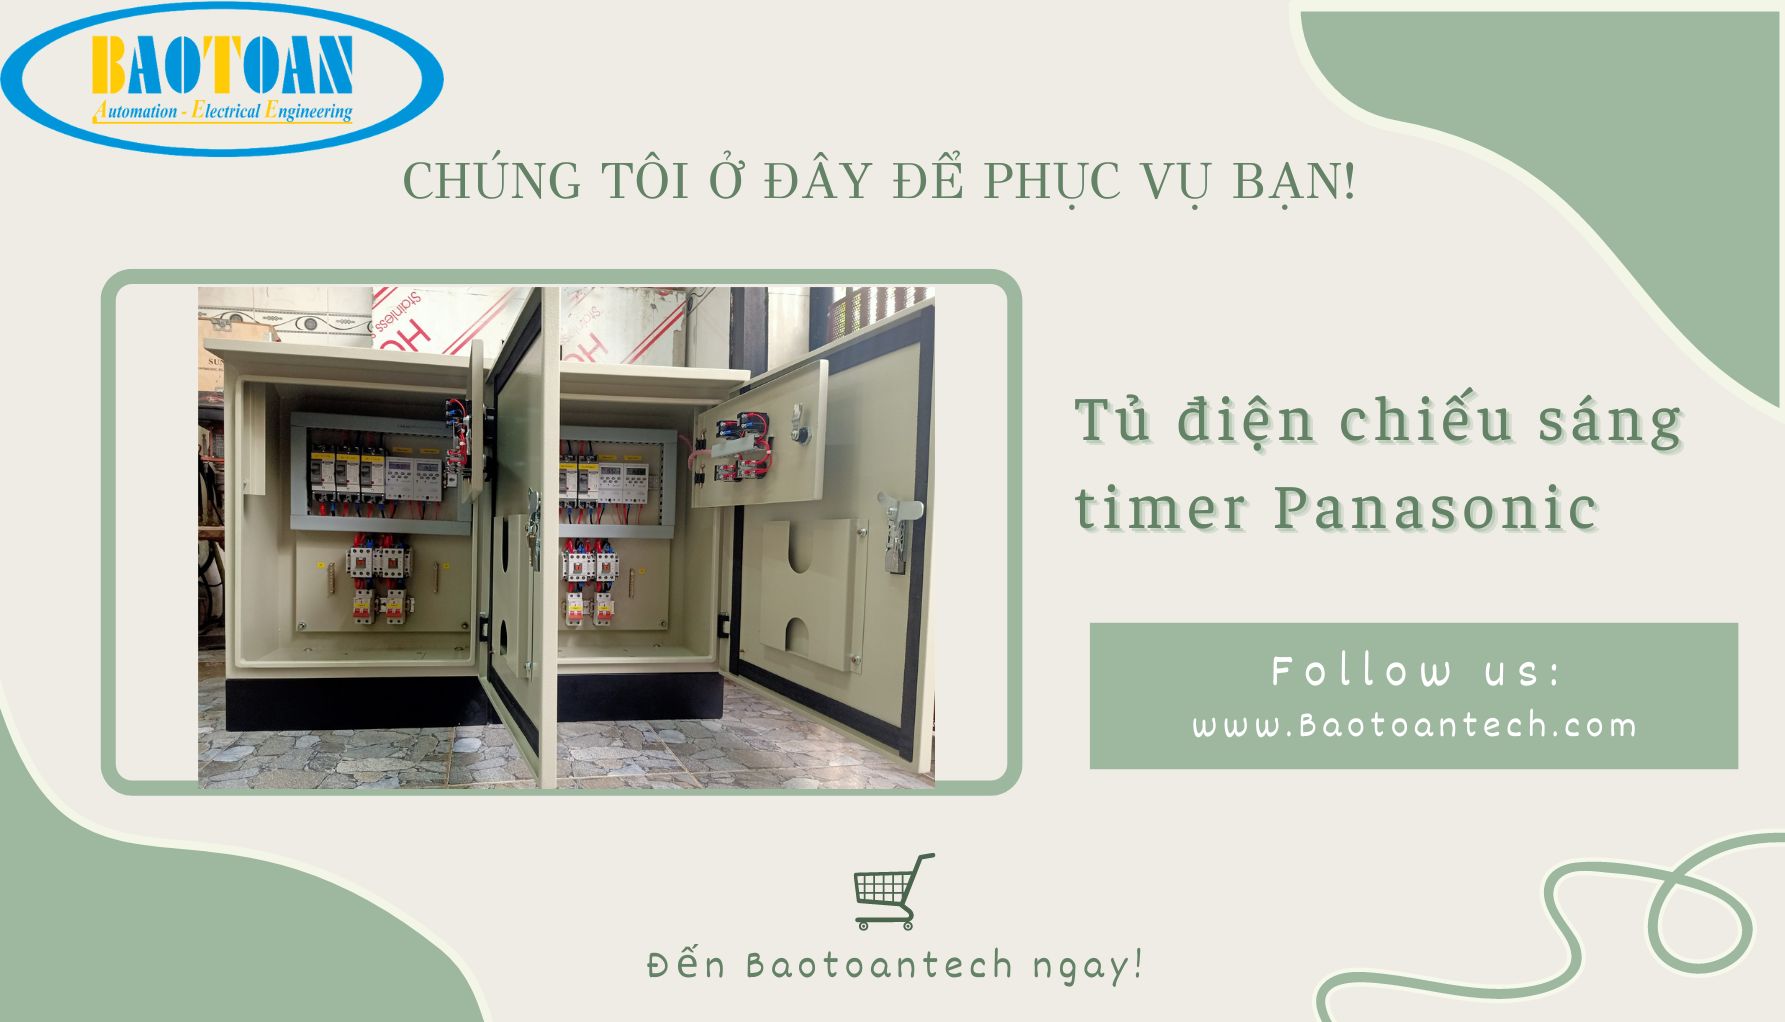 Tủ điện chiếu sáng timer Panasonic tại Baotoantech